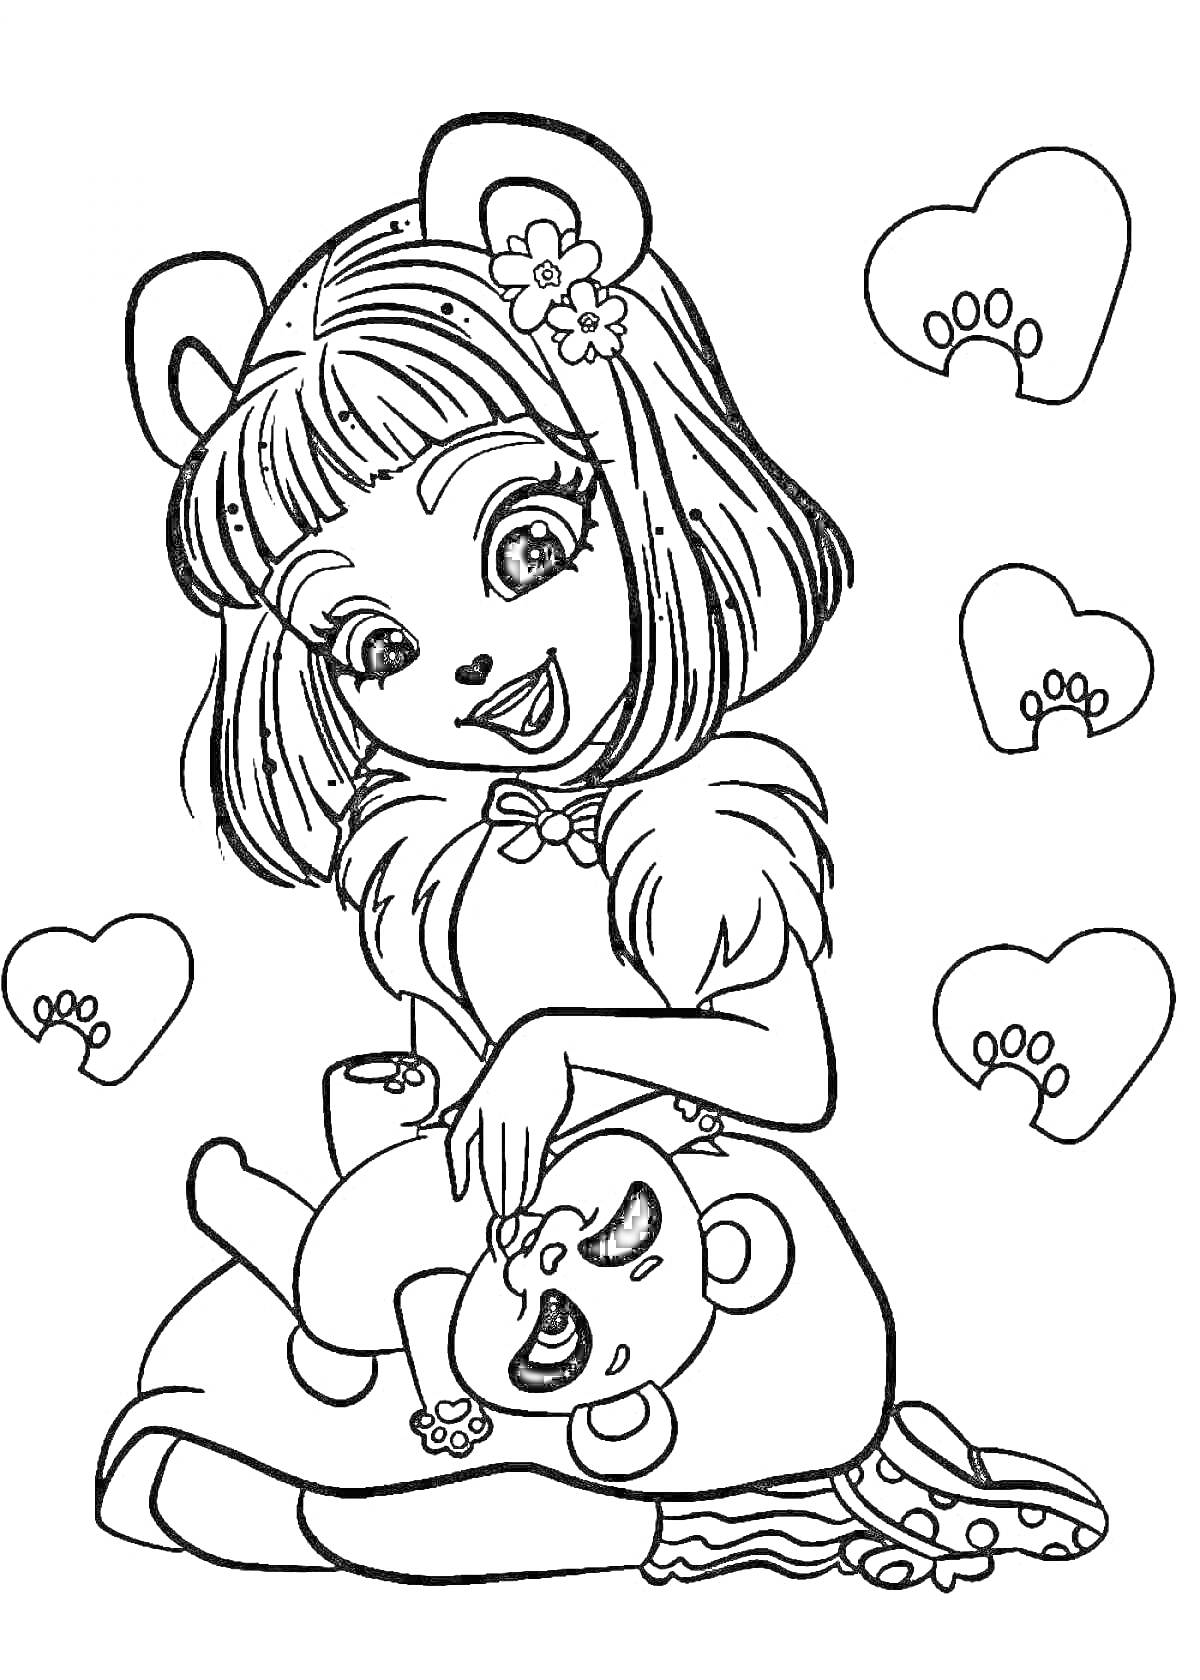 Раскраска Девочка с ушками и цветком в волосах, играющая с плюшевым медвежонком, сердечки с отпечатками лап